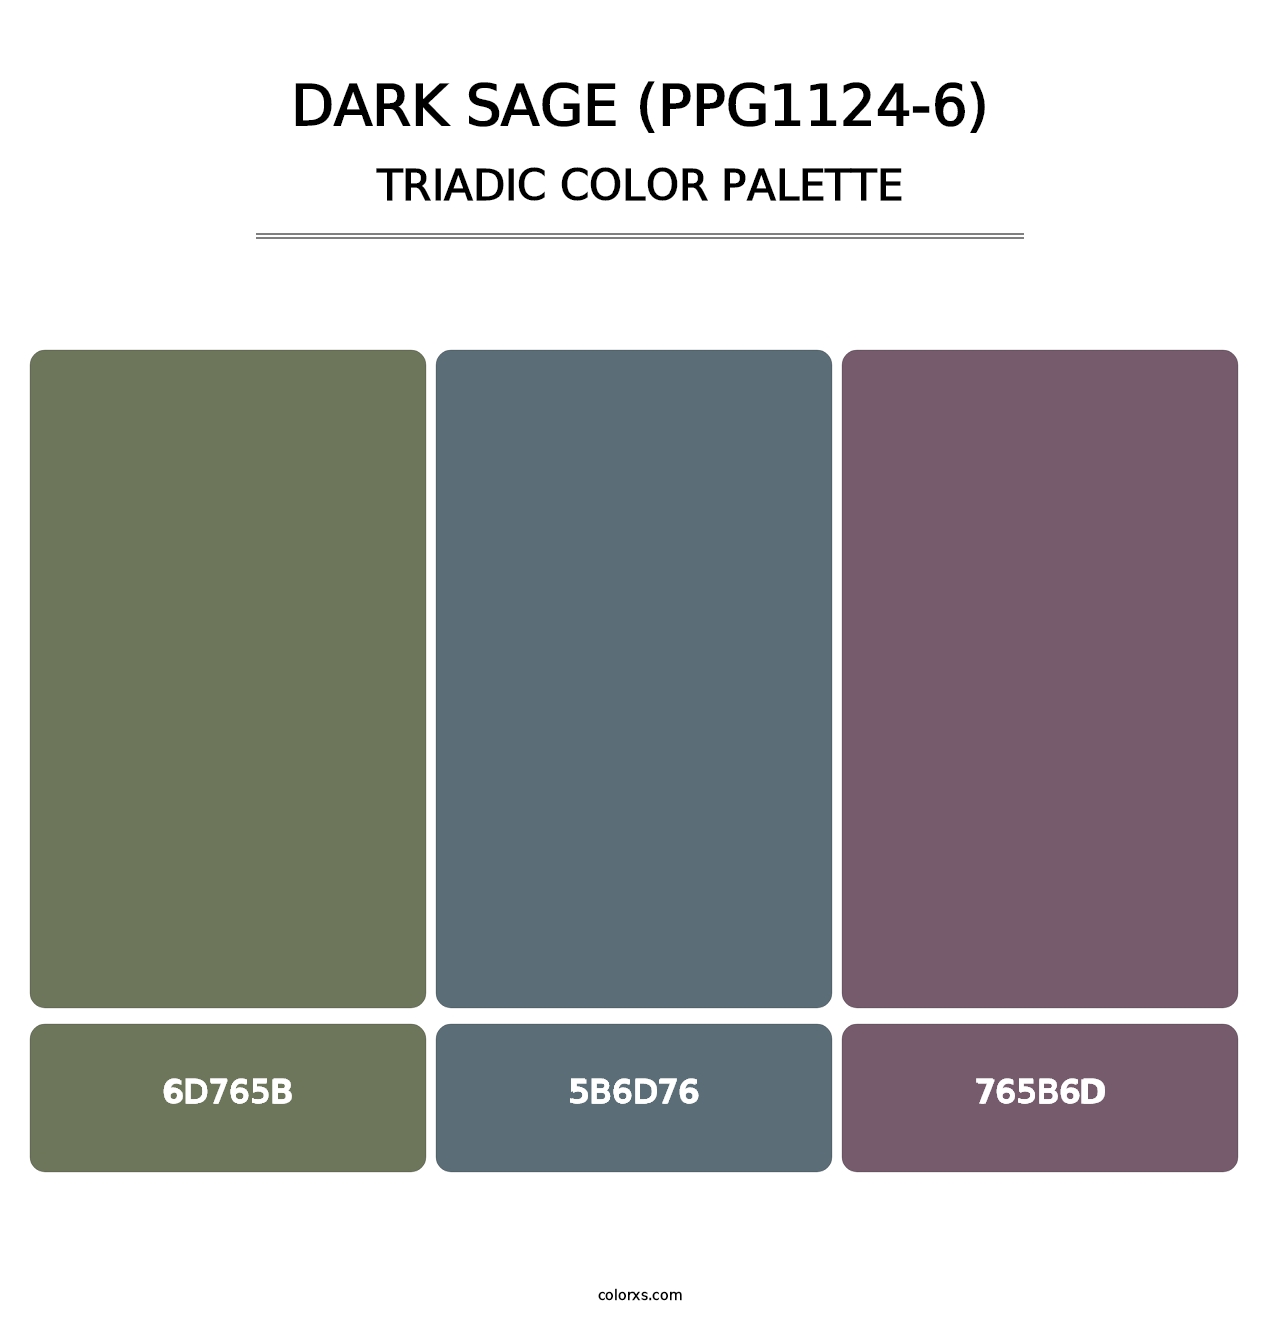 Dark Sage (PPG1124-6) - Triadic Color Palette